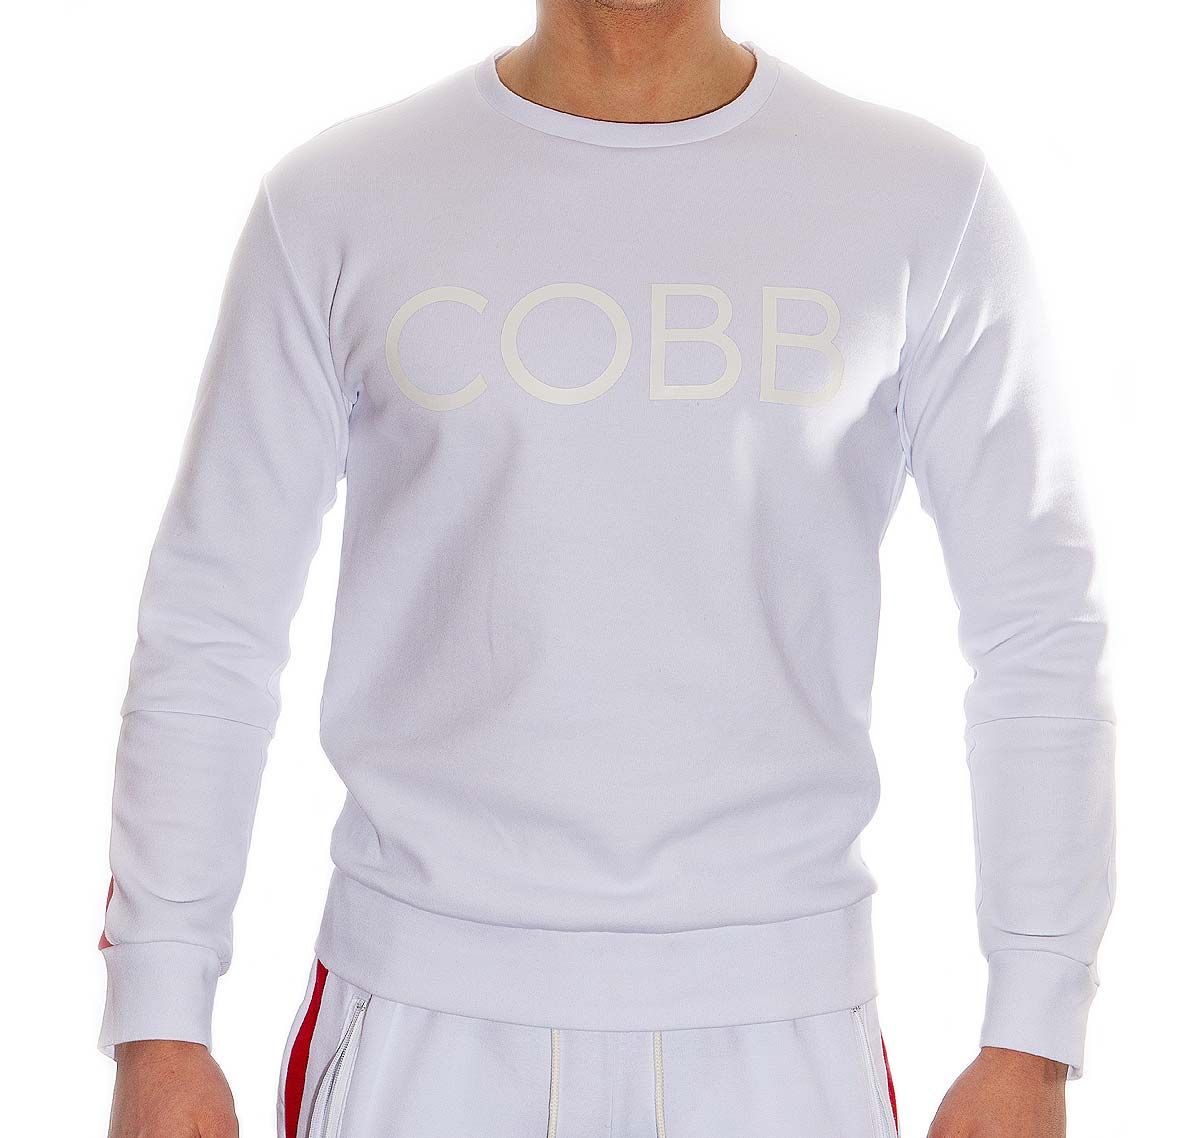 Alexander COBB Sweatshirt SWEETER WHITE, white